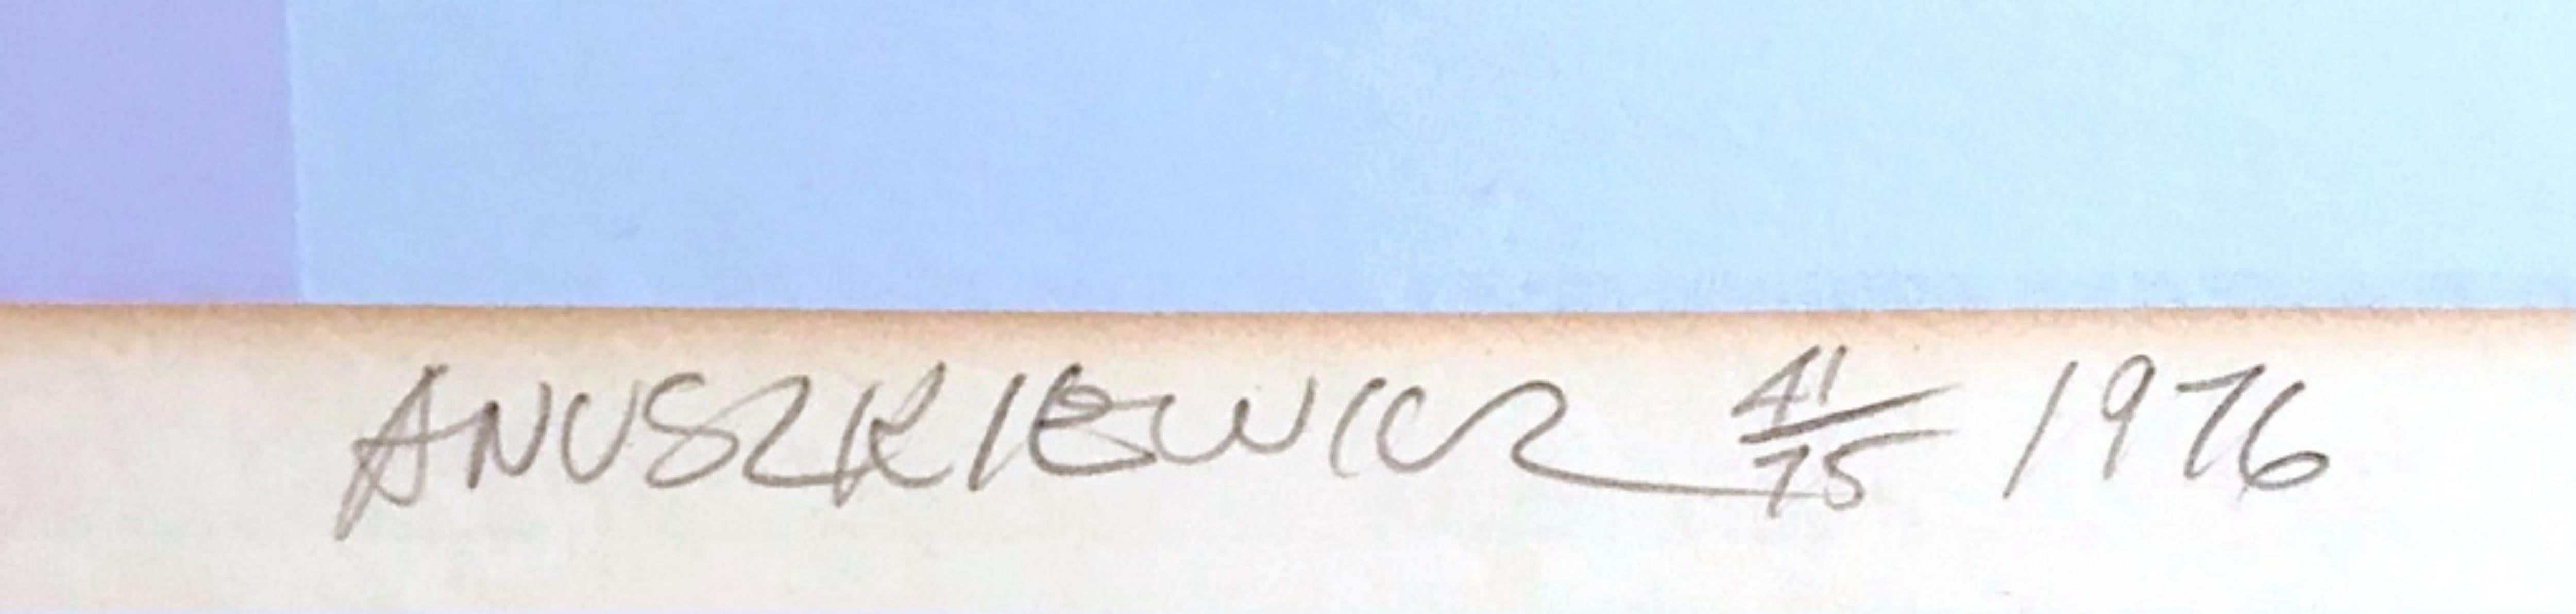 Richard Anuszkiewicz
Tilleul doux, 1976
Sérigraphie 8 couleurs sur papier Lenox 100% coton
38 × 48 pouces
Signé au crayon et numéroté 41/75 au recto ; porte le cachet de l'imprimeur du NYIT (New York Institute of Technology).
Non encadré
Nous